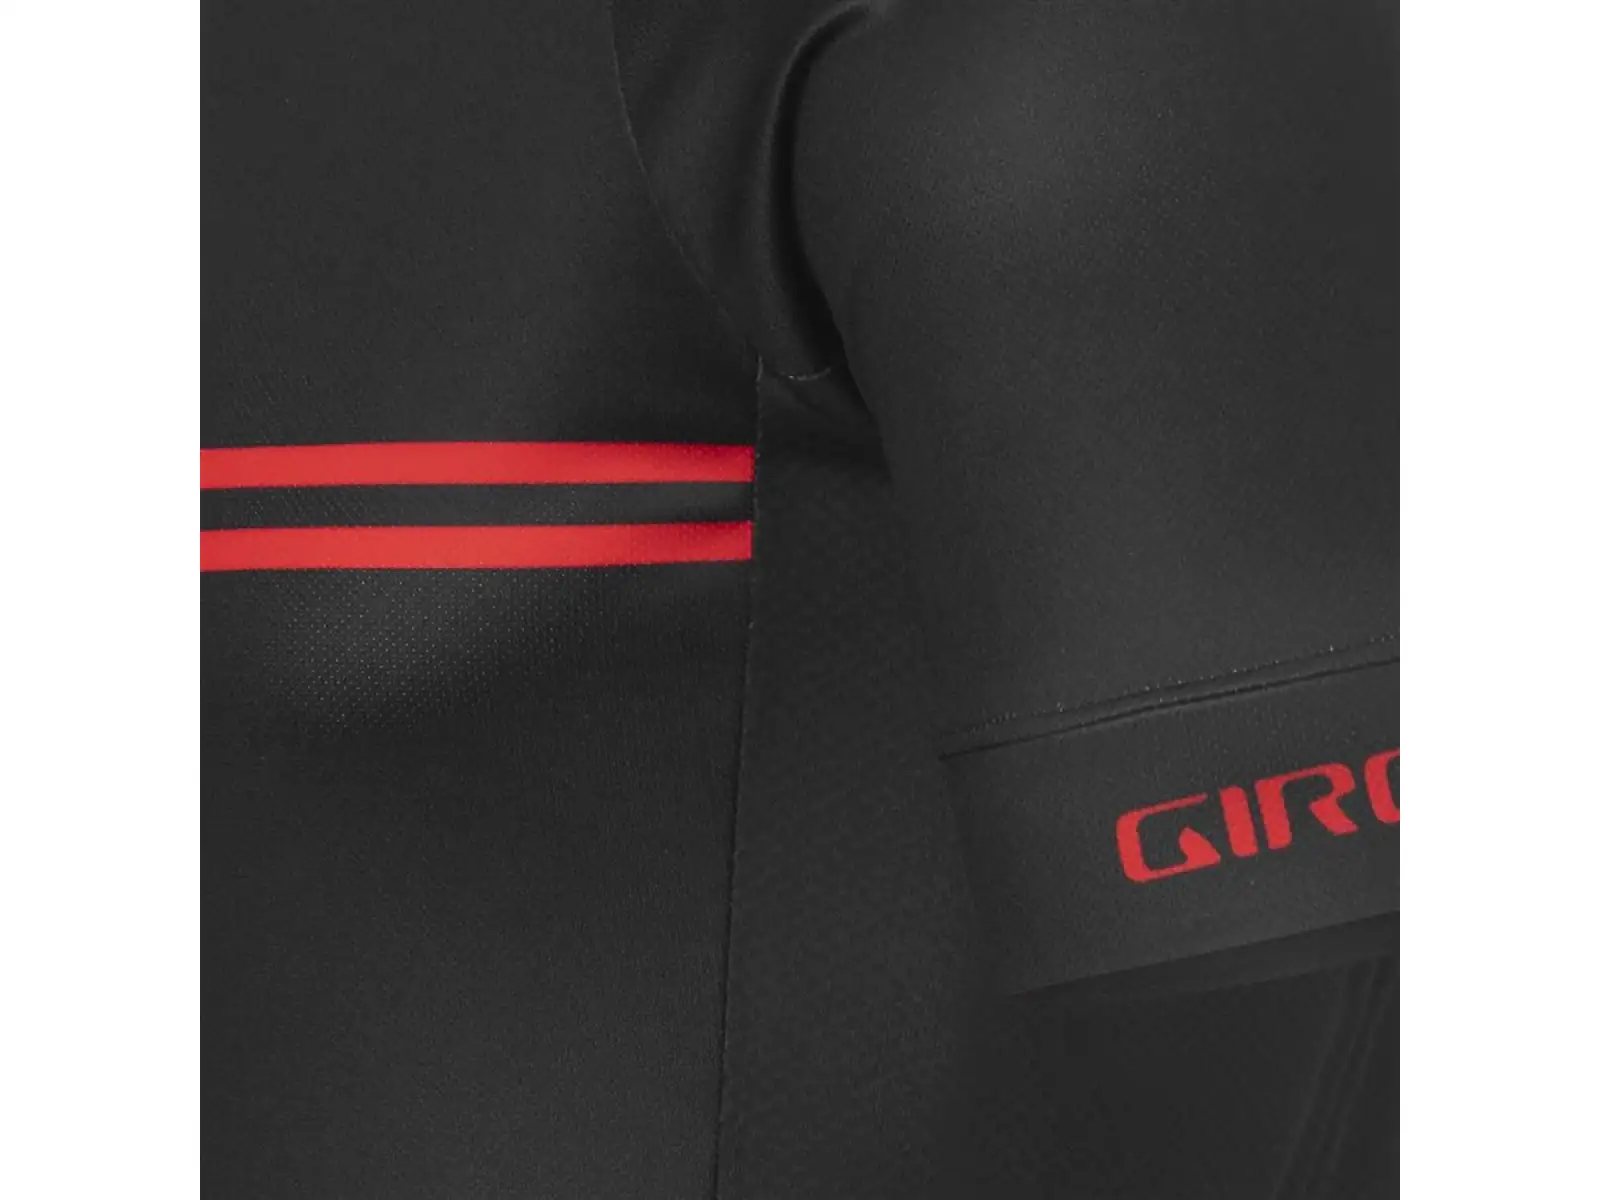 Giro Chrono Sport pánský dres krátký rukáv Black/Red Classic Stripe